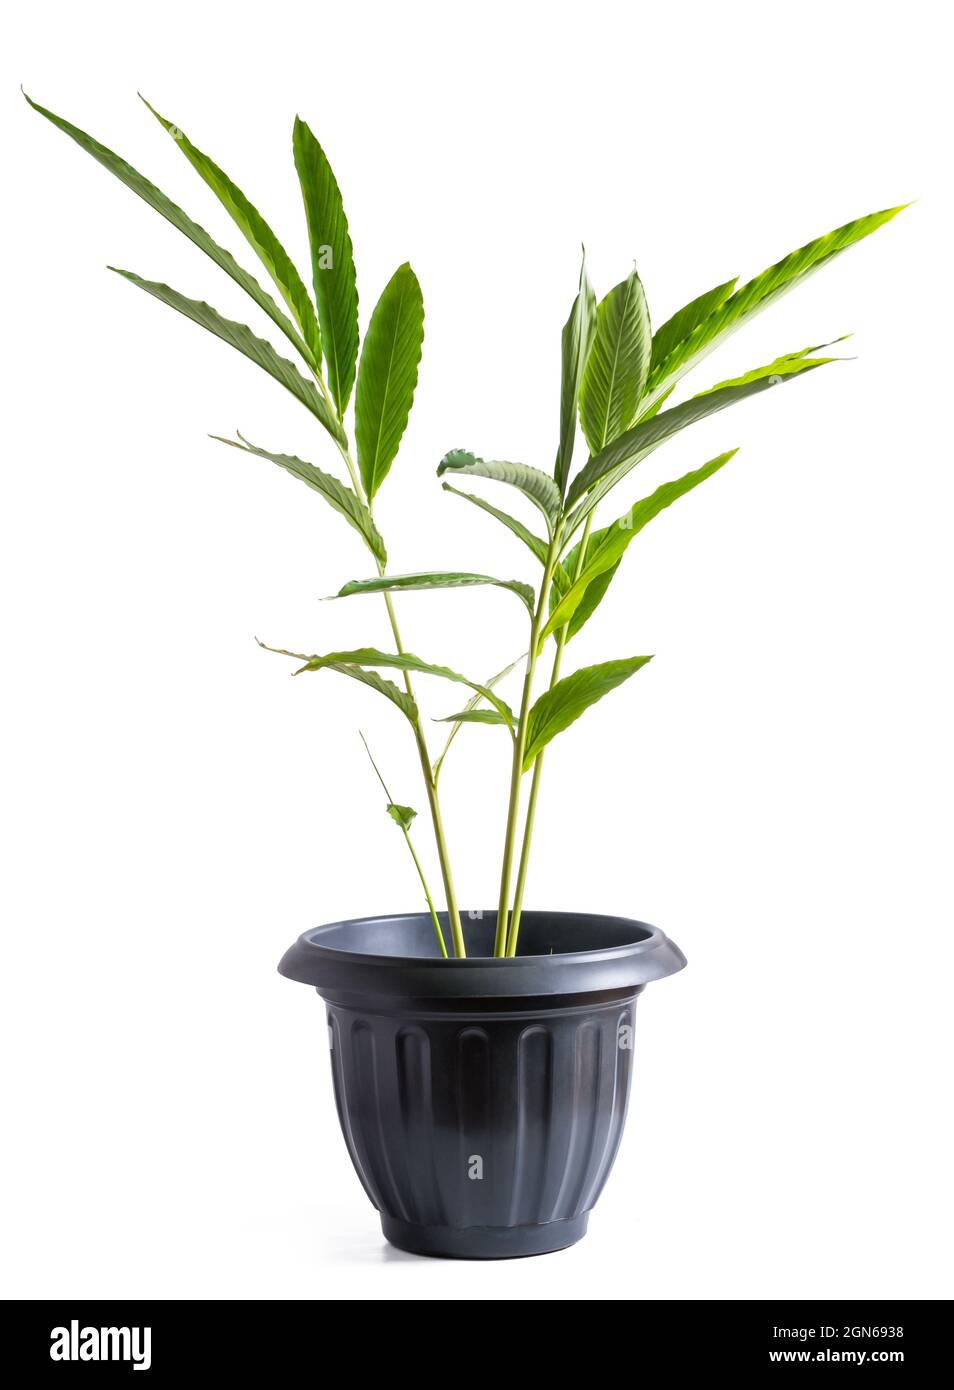 pianta del cardamomo che cresce in una pentola, pianta aromatica comunemente conosciuta come cardamomo verde o vero, piccante costoso, pianta tropicale isolata su sfondo bianco Foto Stock